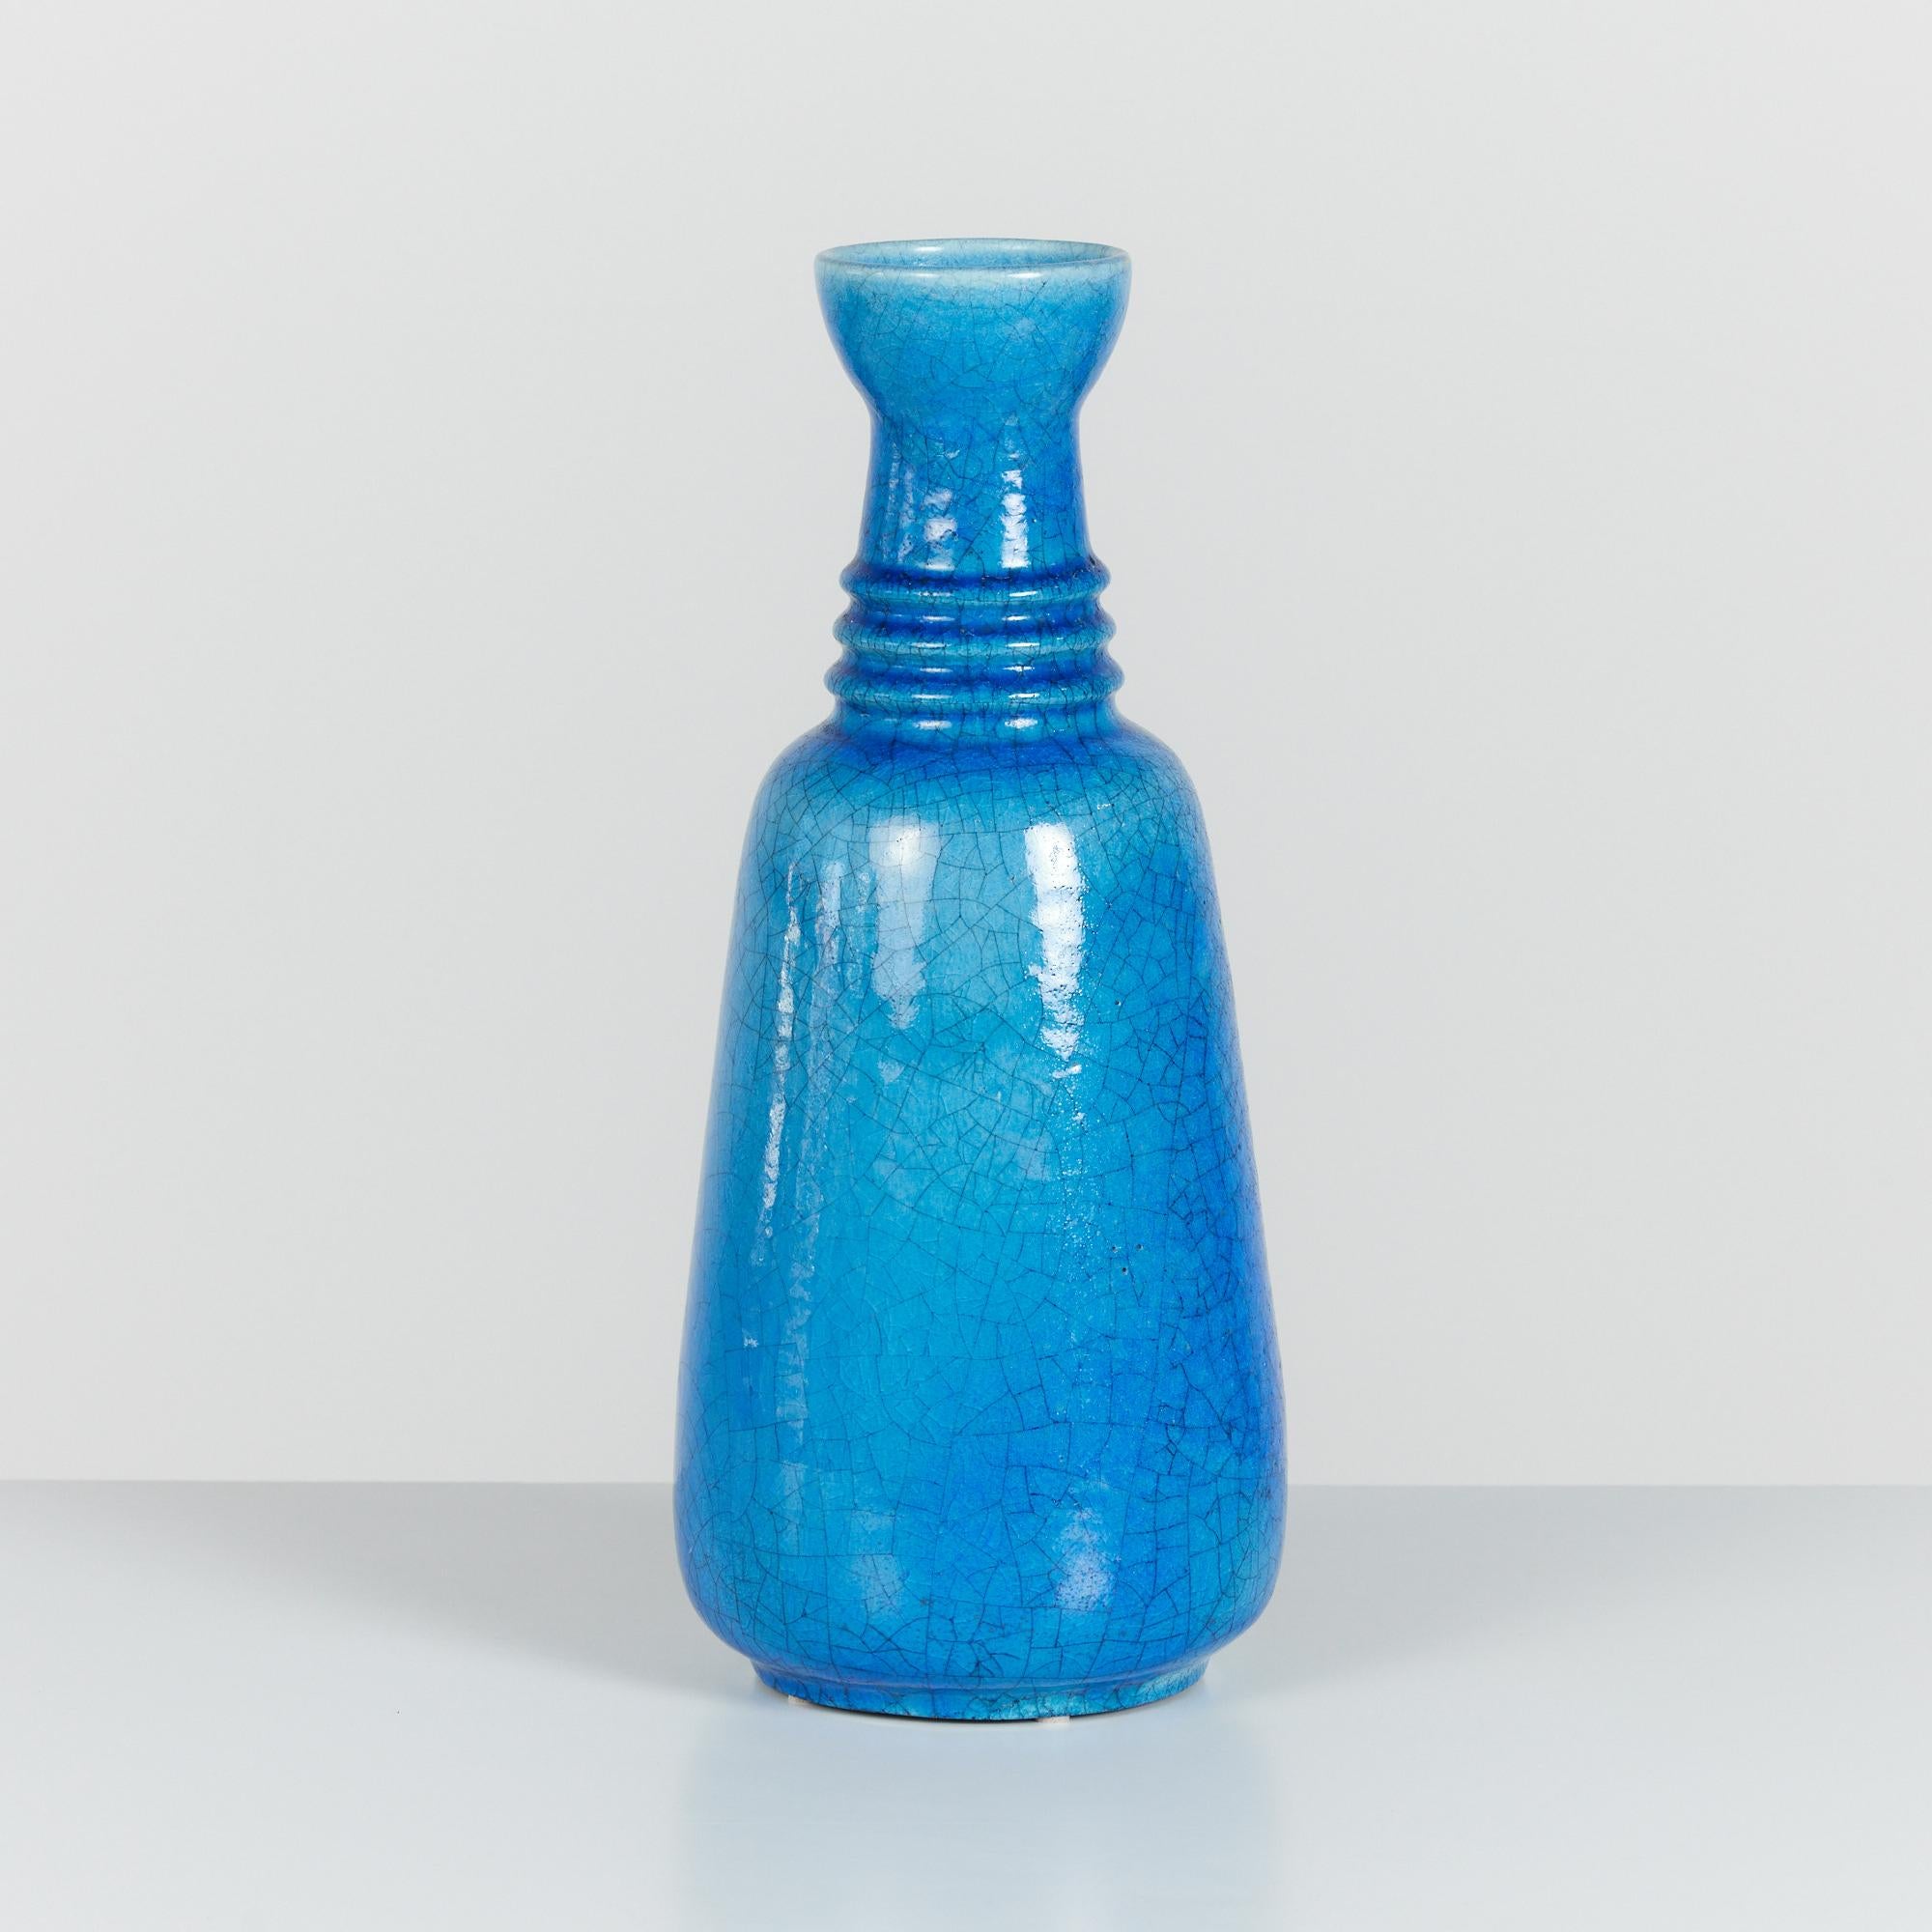 Keramikvase von Arnold Zahner, ca. 1960er Jahre, Rheinfelden, Schweiz. Diese Vase ist durchgehend mit einer blauen, glänzenden Craquelé-Glasur versehen. Der Halsausschnitt ist gerippt und hat eine Tulpenöffnung. Künstlerstempel auf der